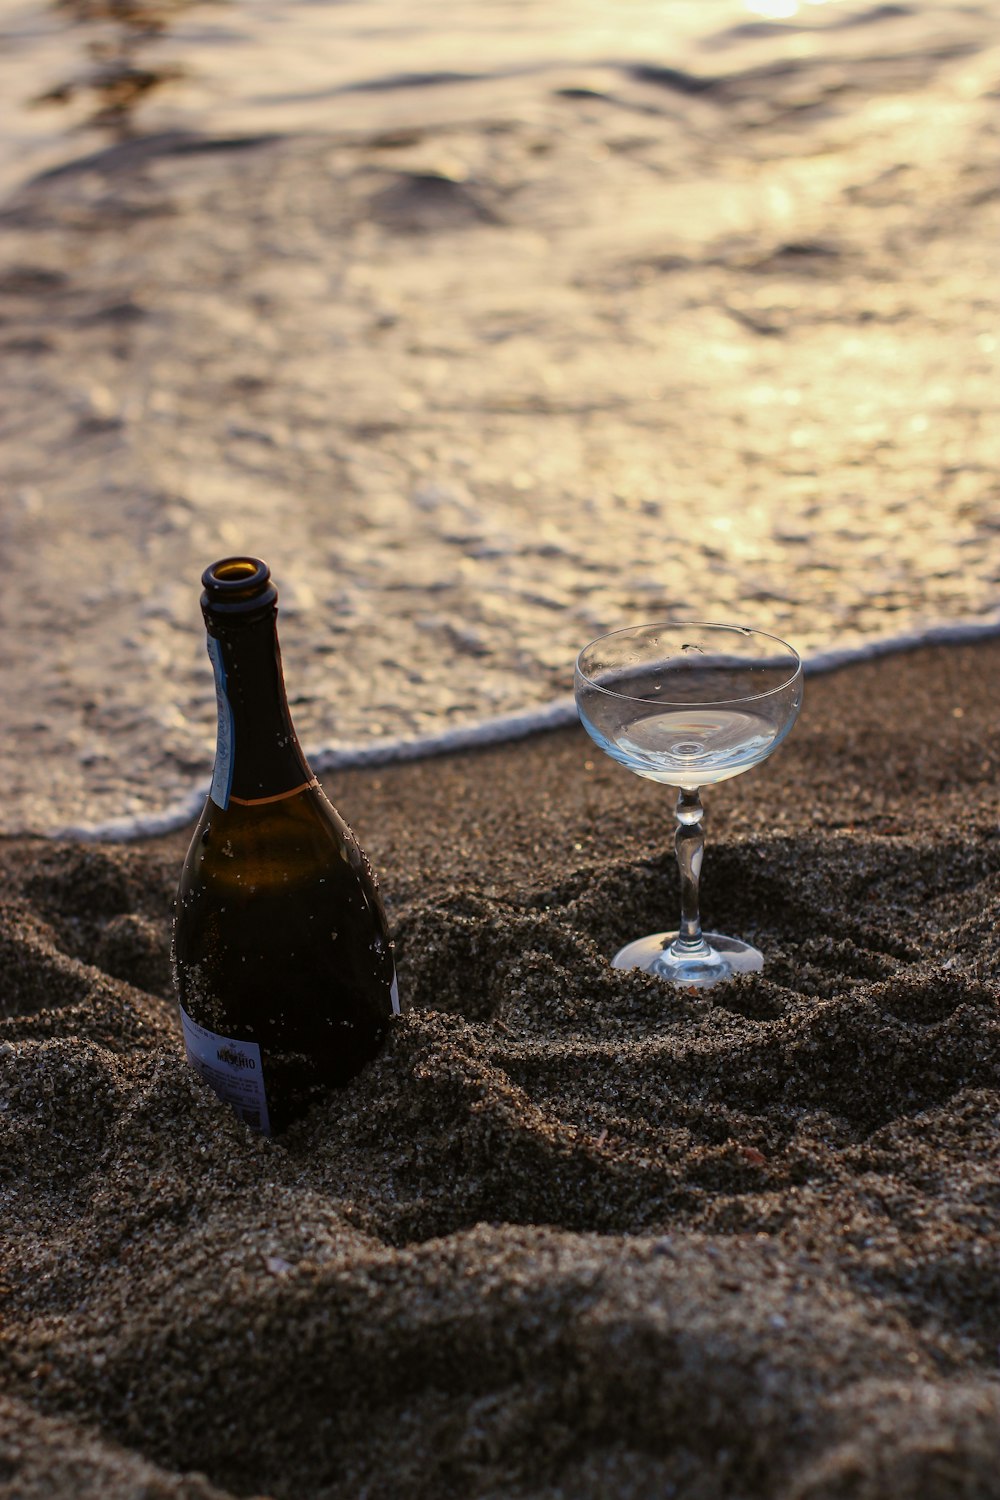 schwarze Glasflasche neben klarem Weinglas auf braunem Sand tagsüber